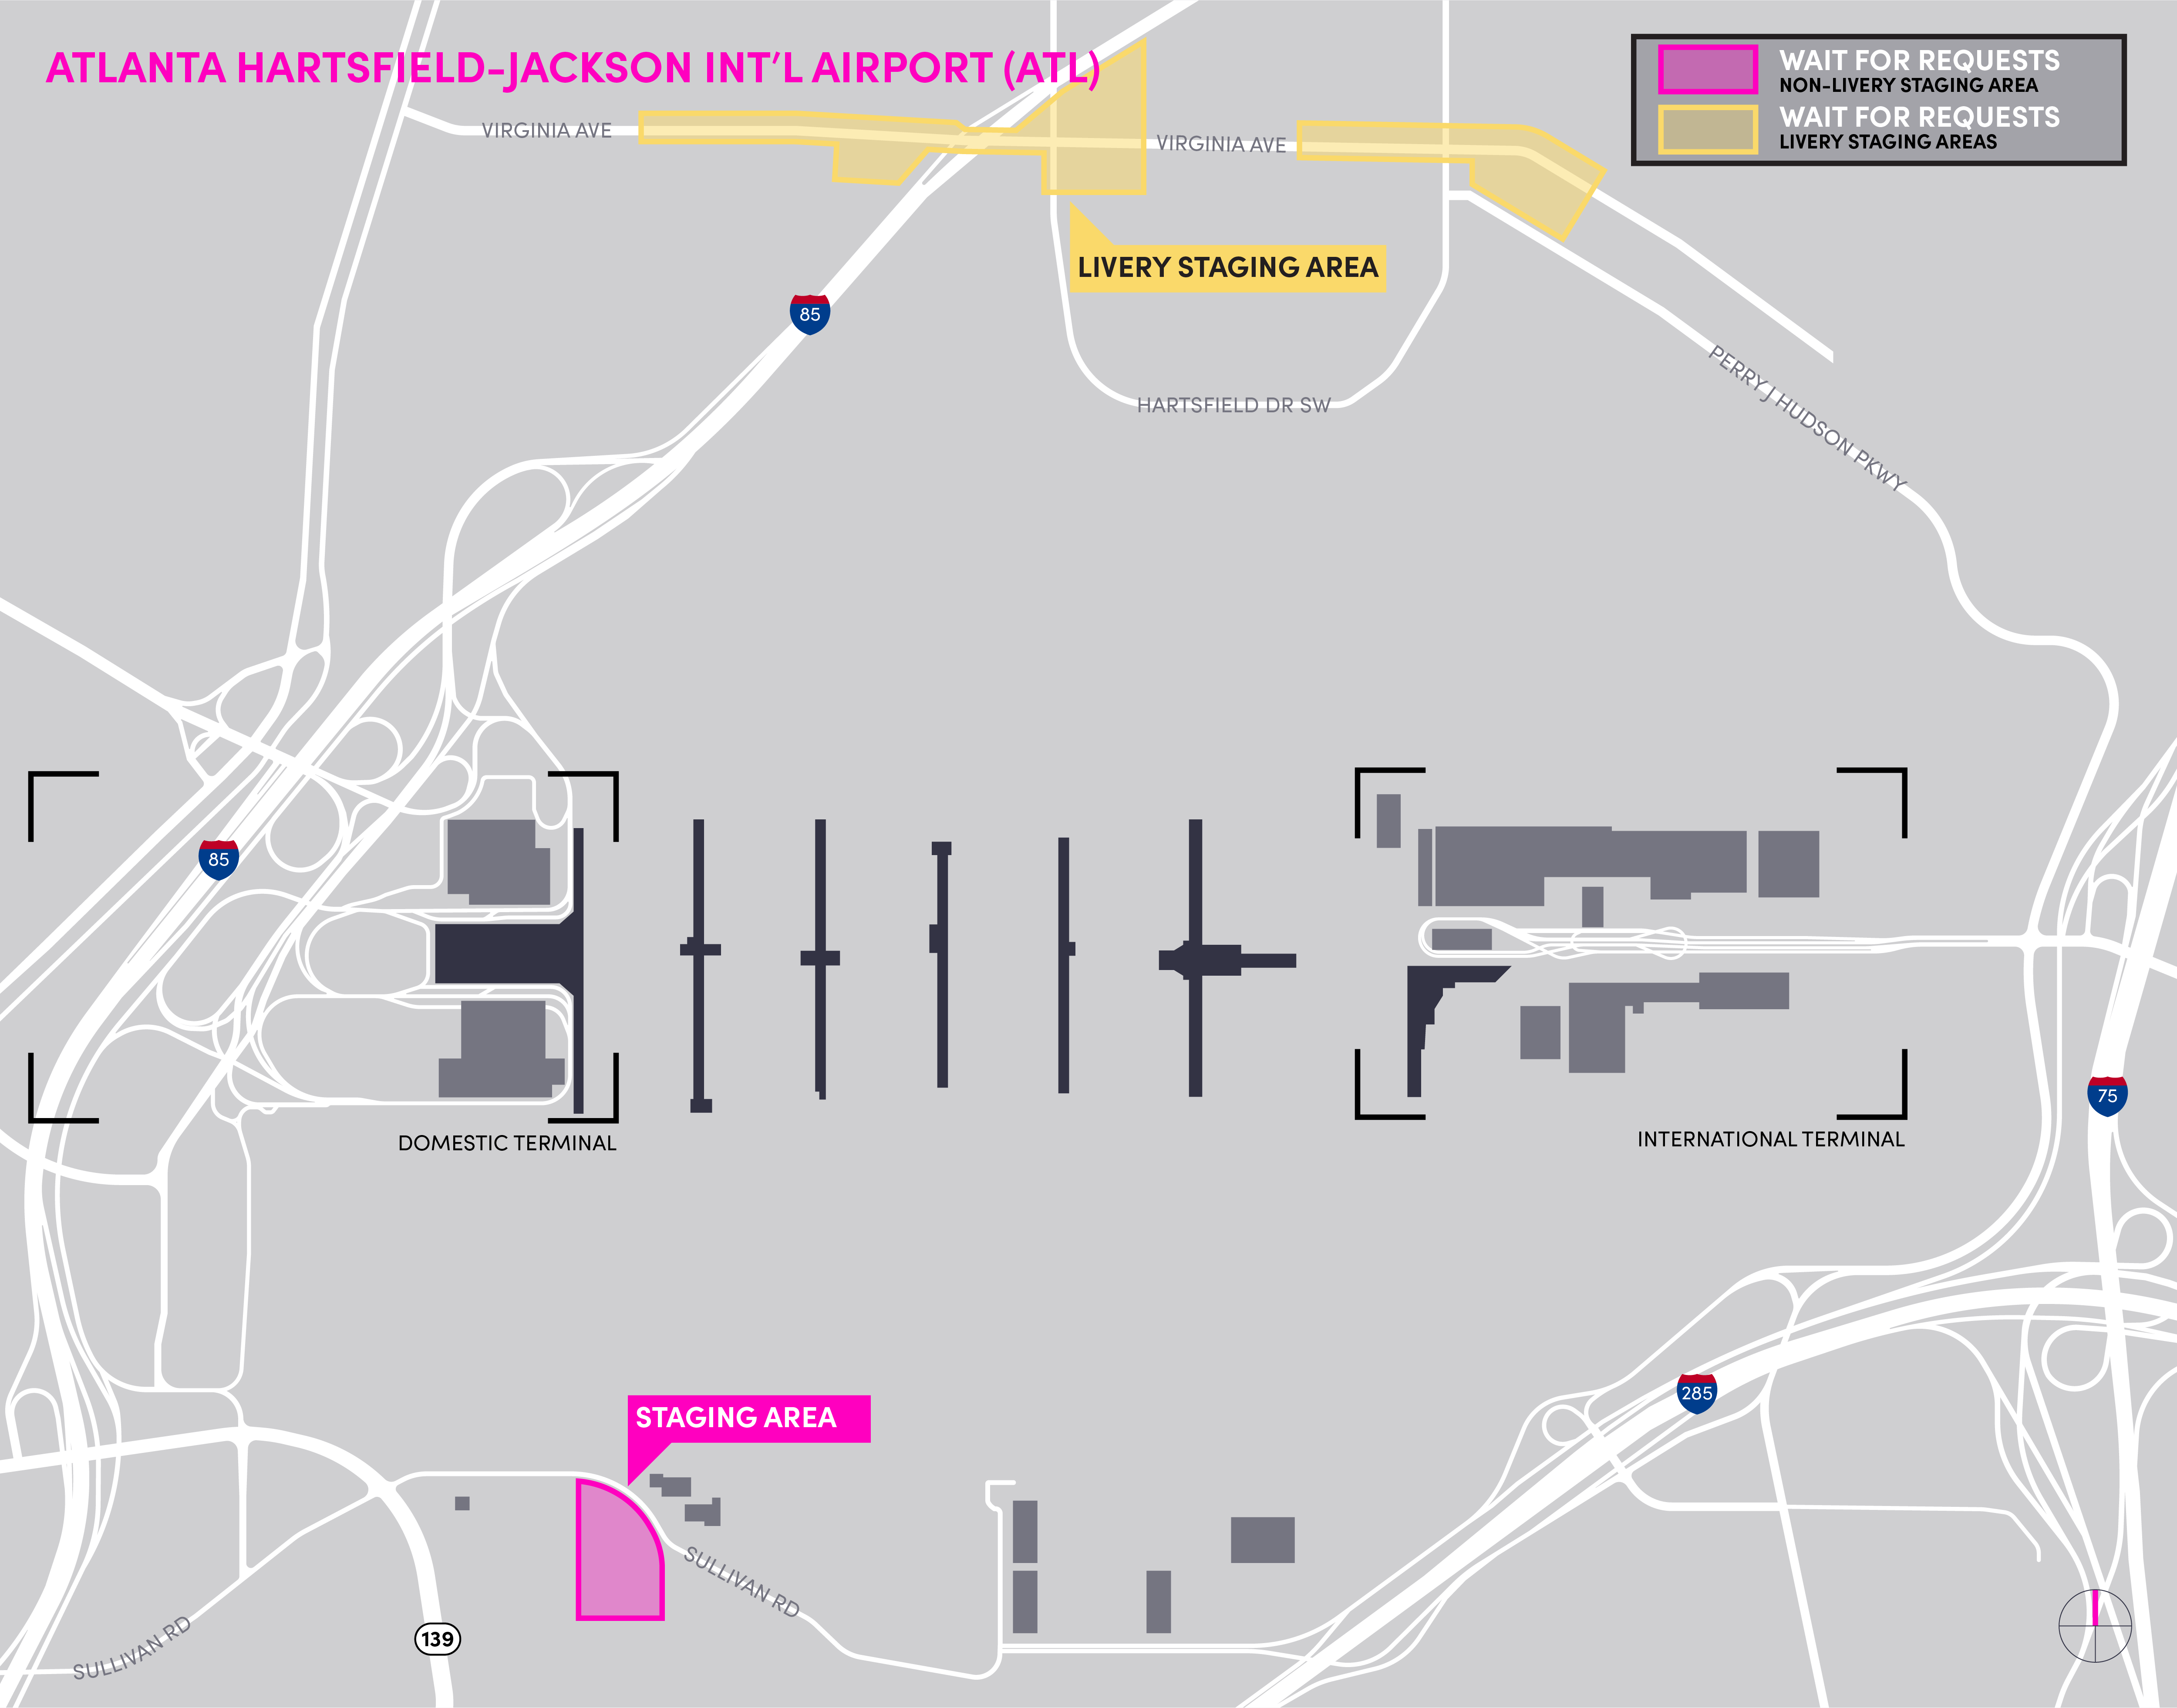 Mapa del aeropuerto de ATL en el que se detalla el área de espera y el área de espera para vehículos comerciales.